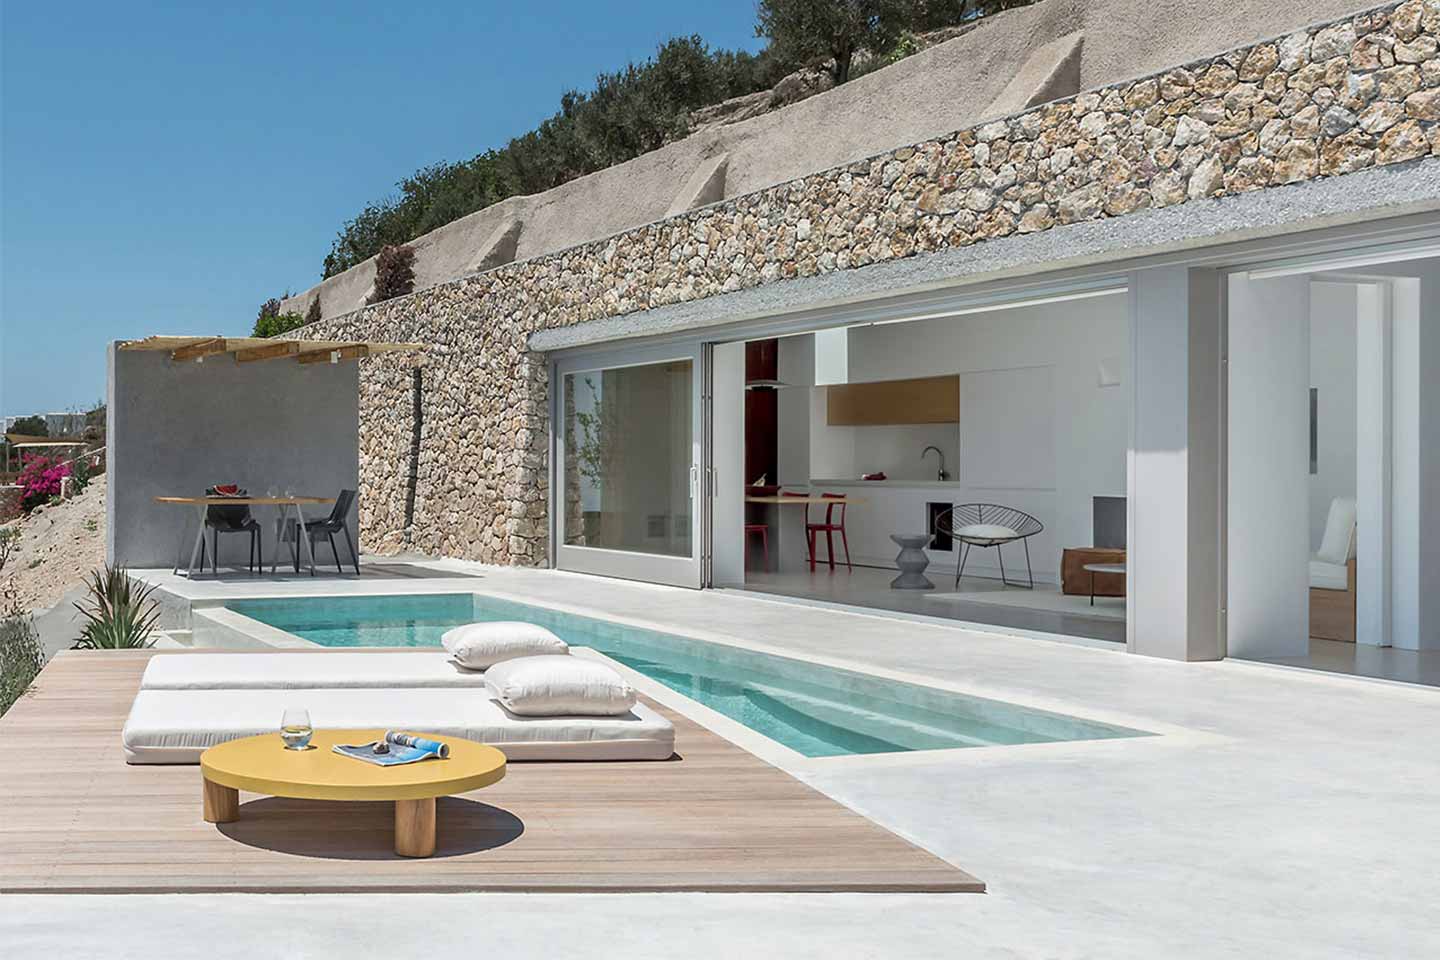 Kapsimalis Architects Villa sul Monte Ilias a Santorini